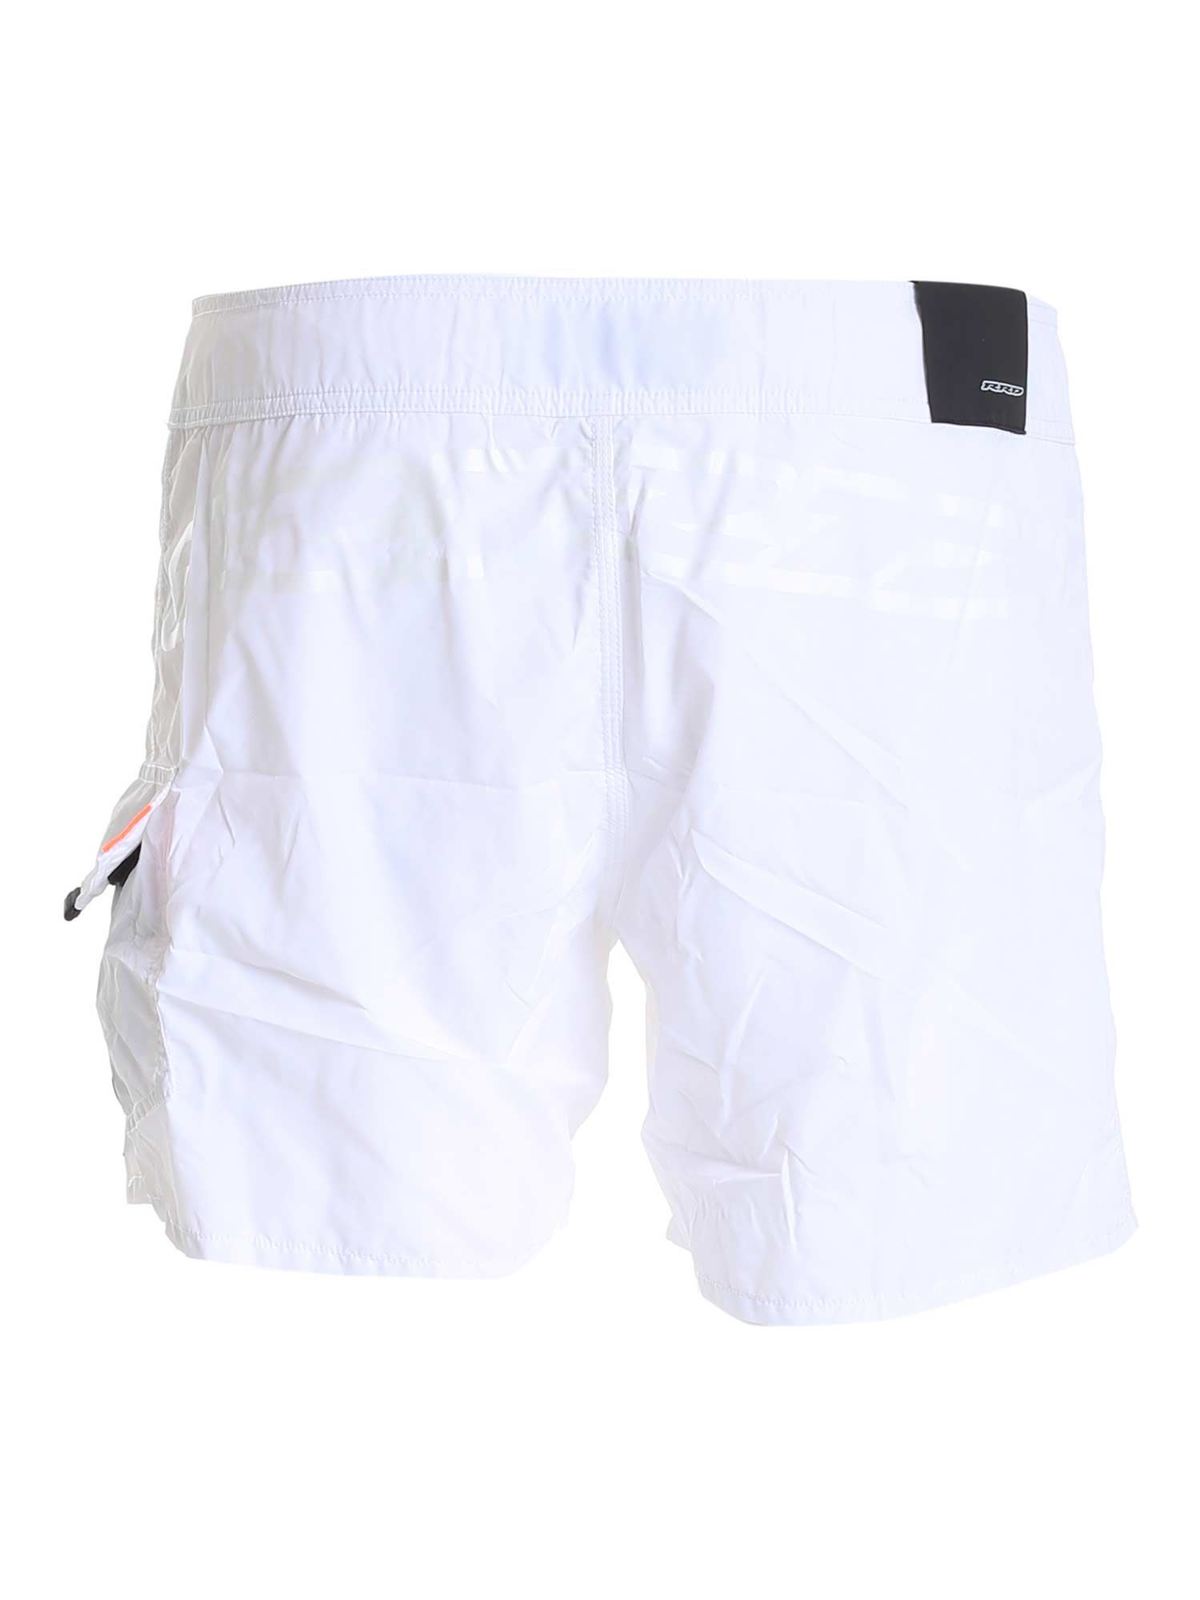 RRD Roberto Ricci Designs - Scirocco shorts in white - Swim shorts ...